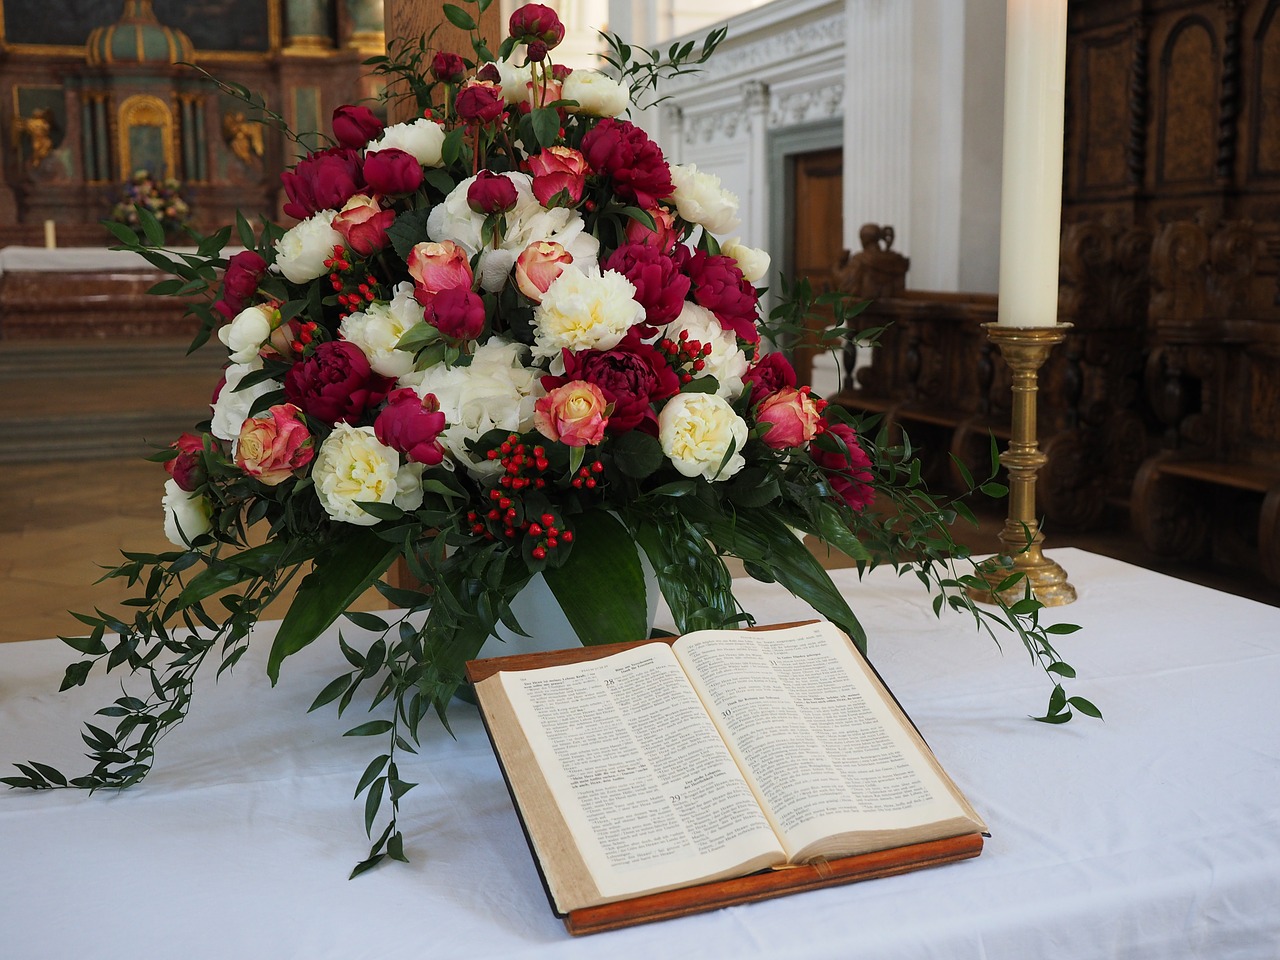 Wystrój kościoła z okazji ślubu – dekoracje kwiatowe kościoła